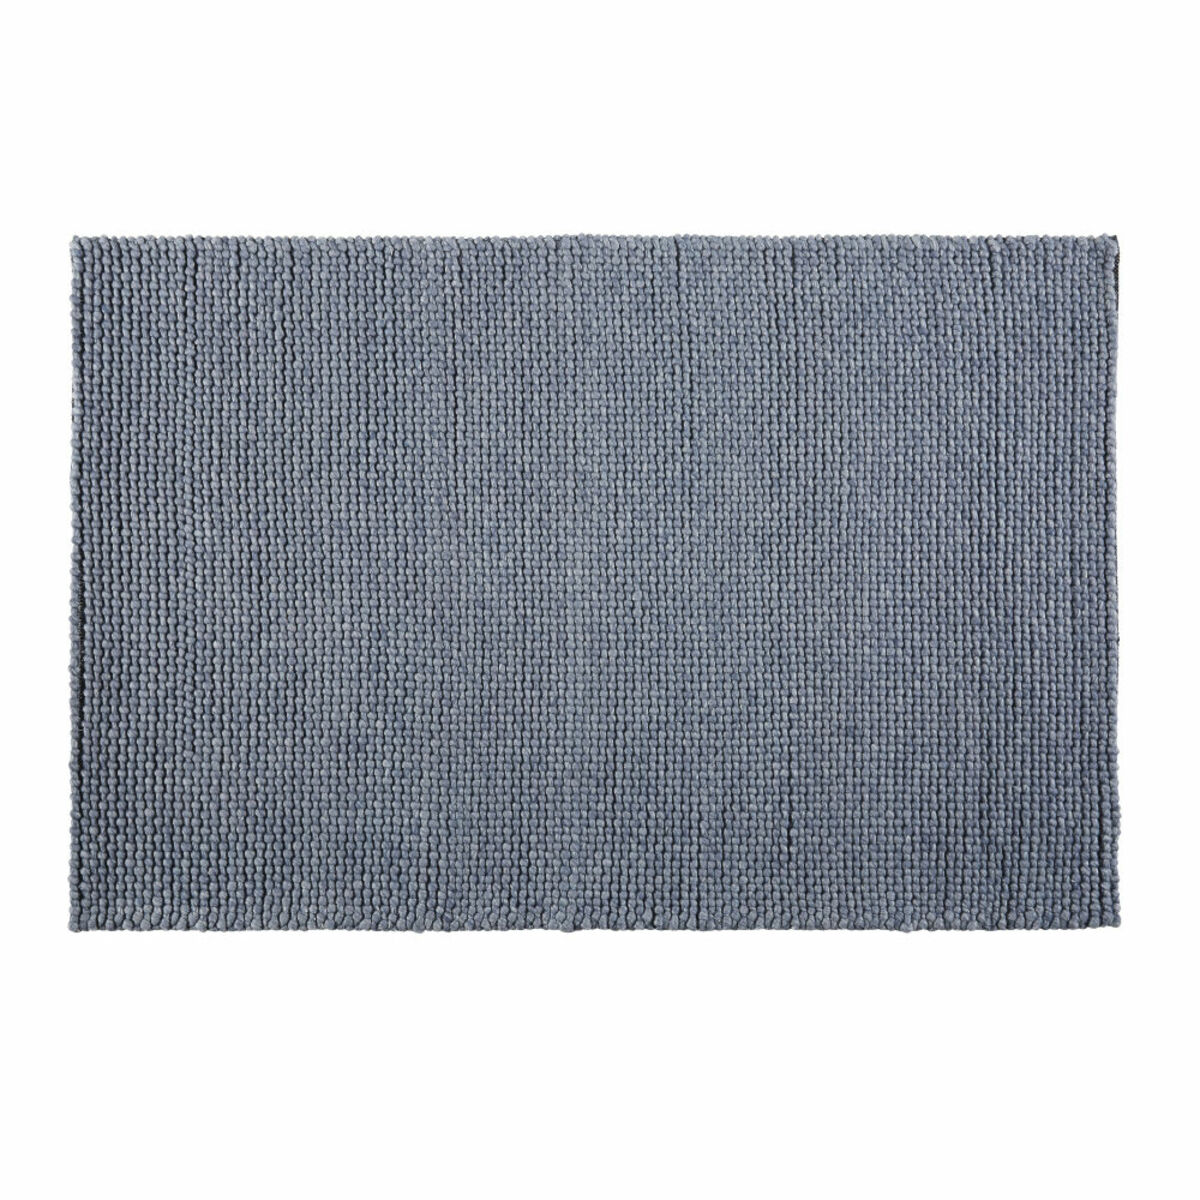 Tapis en laine tressée gris anthracite 160x230